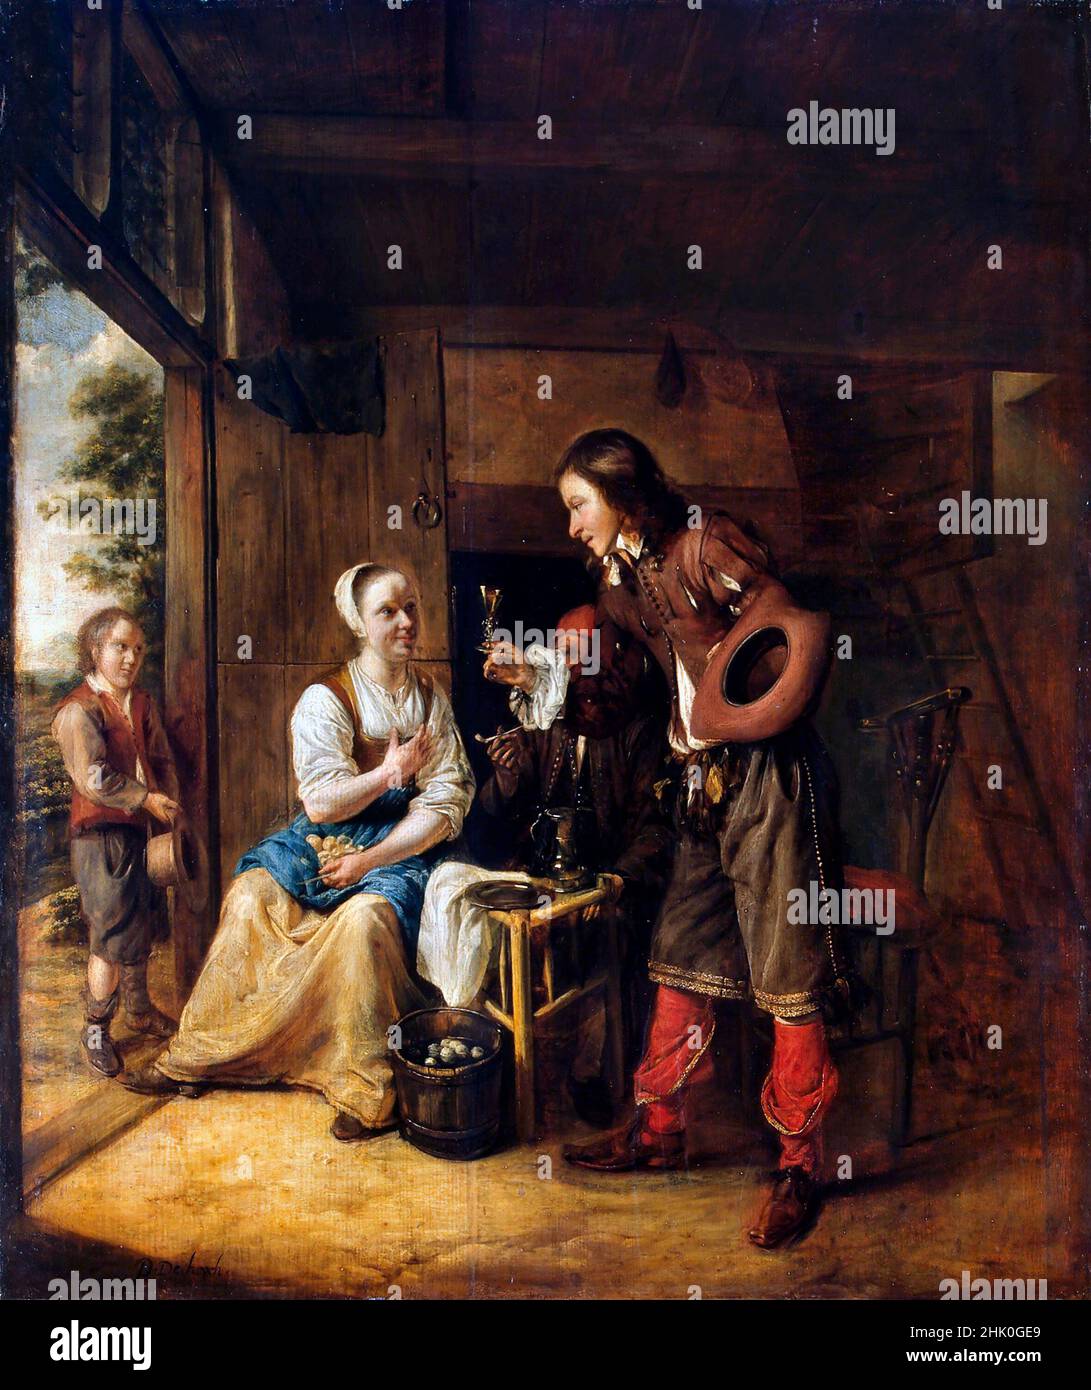 Pieter de Hooch. Gemälde mit dem Titel „Soldat, der einer Frau ein Glas Wein anbietet“ des niederländischen Malers des Goldenen Zeitalters, Pieter de Hooch (1629-1684), Öl auf Tafel, c. 1653 Stockfoto